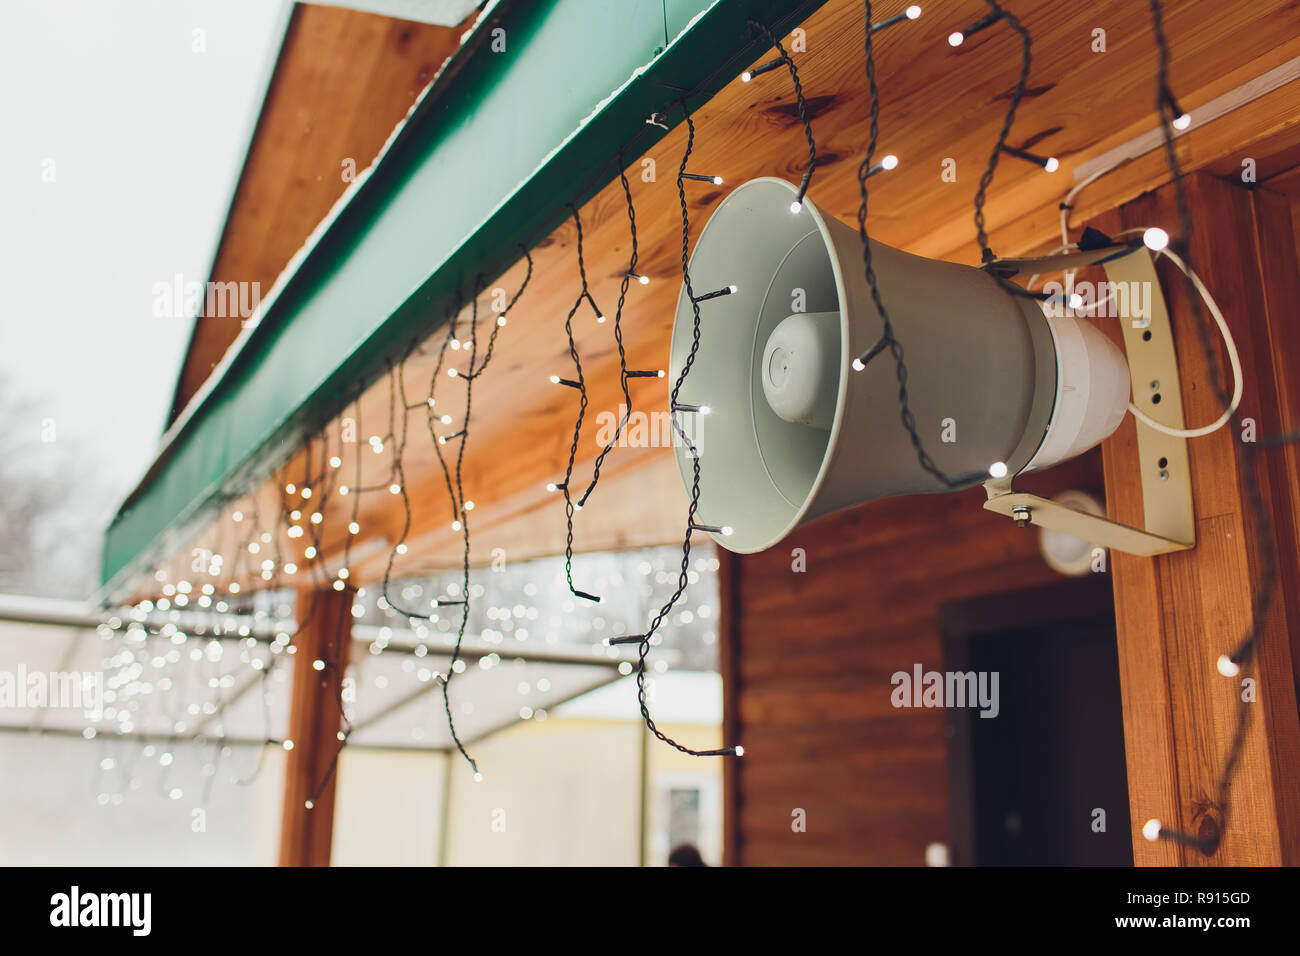 Sirene und Alarm Lautsprecher an der Wand in der Stadt Stockfotografie -  Alamy